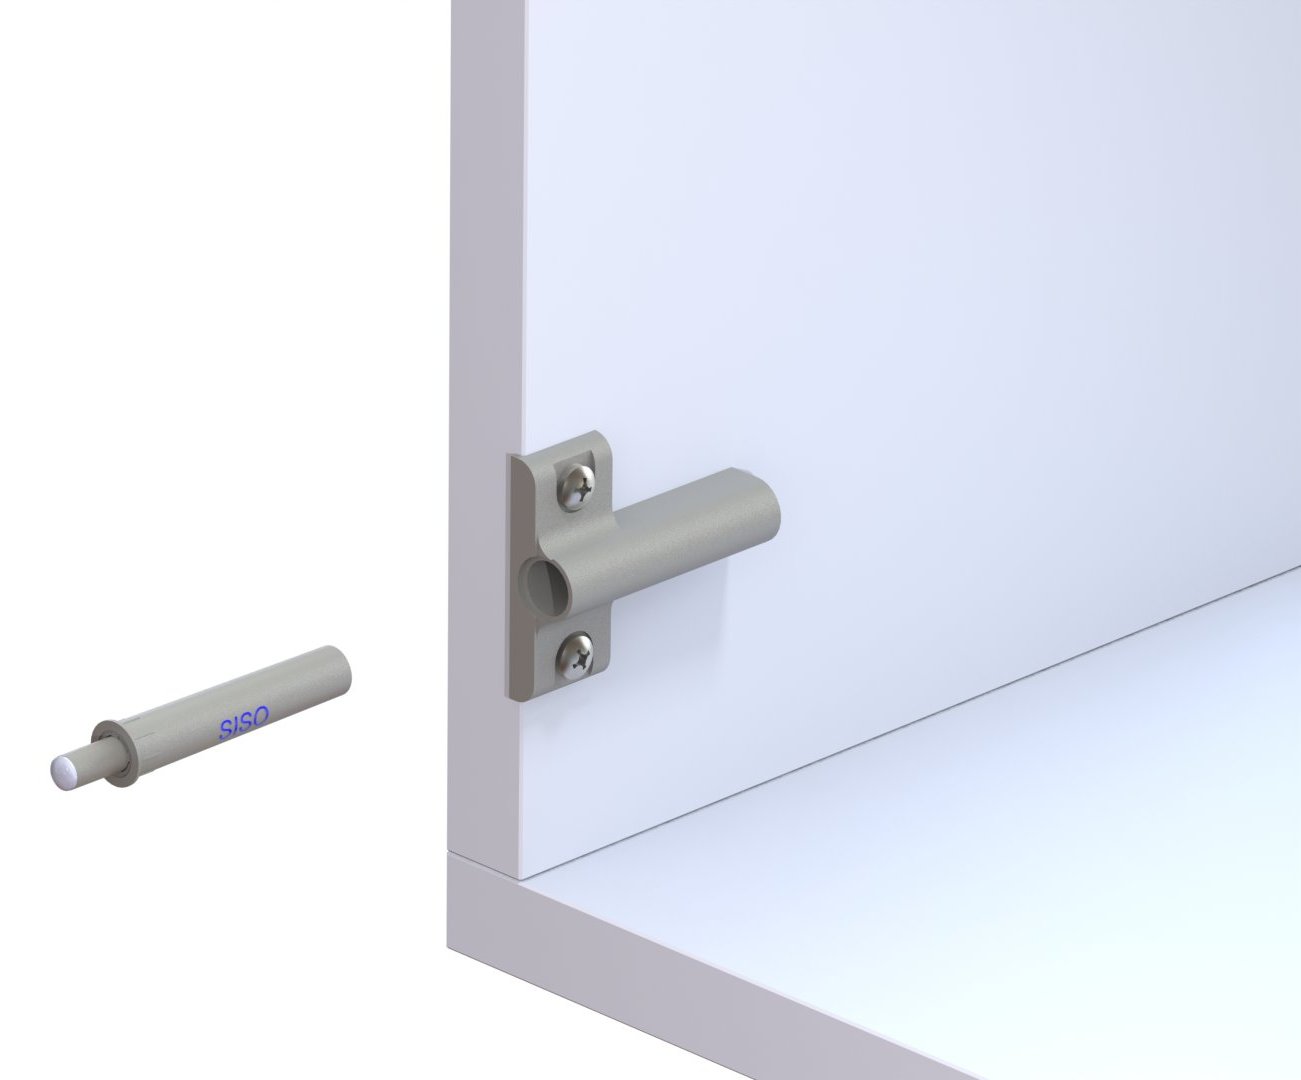 2 amortiguadores de puerta de cierre suave con placa de montaje en cruz.  Para muebles atornillados - compuertas para muebles, cierre suave